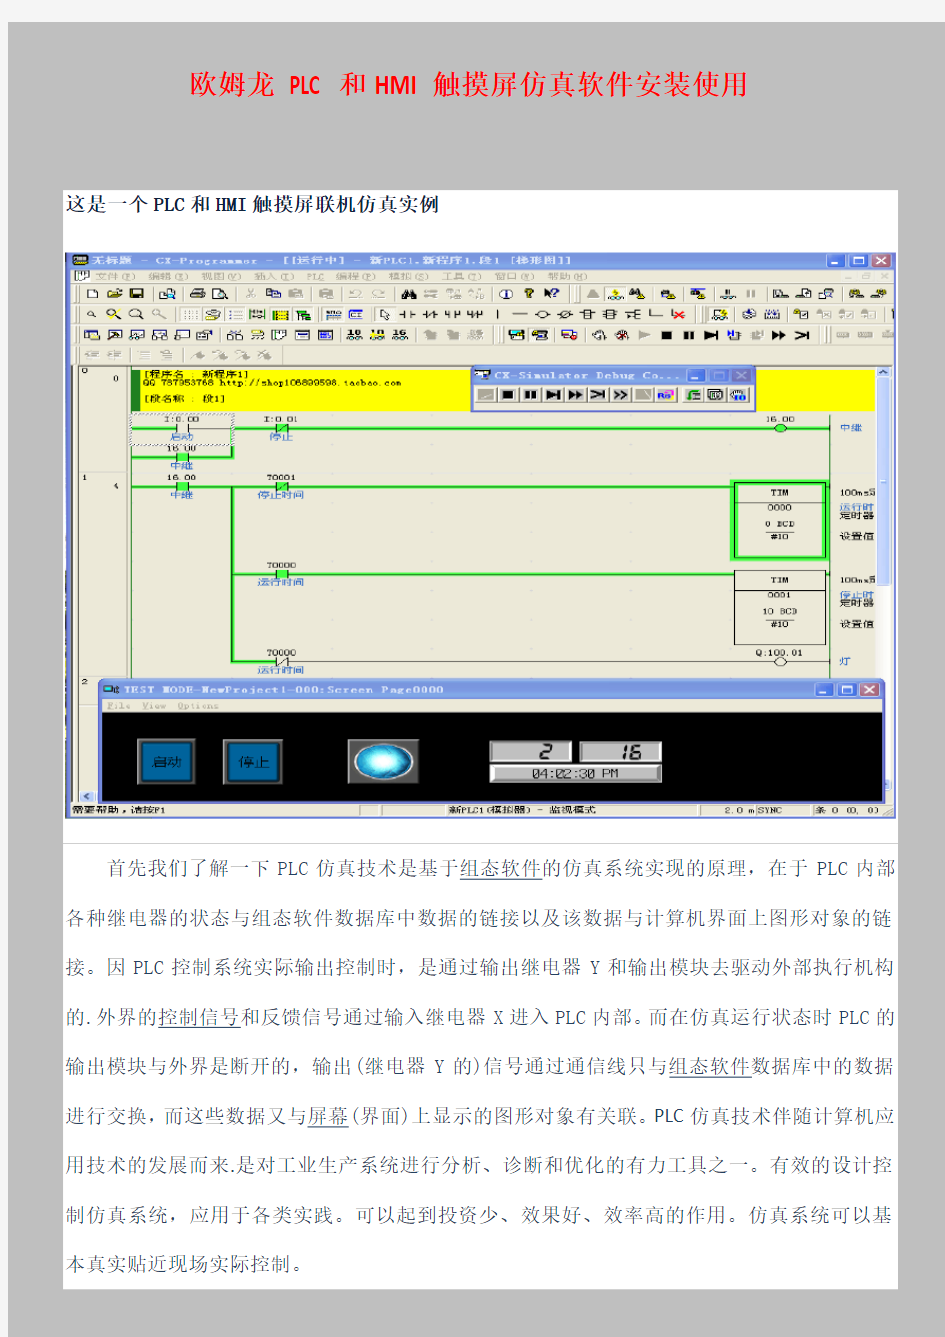 最新欧姆龙PLC编程软件CX-Programmer和触摸屏组态软件CX-Designe联机仿真图文教程